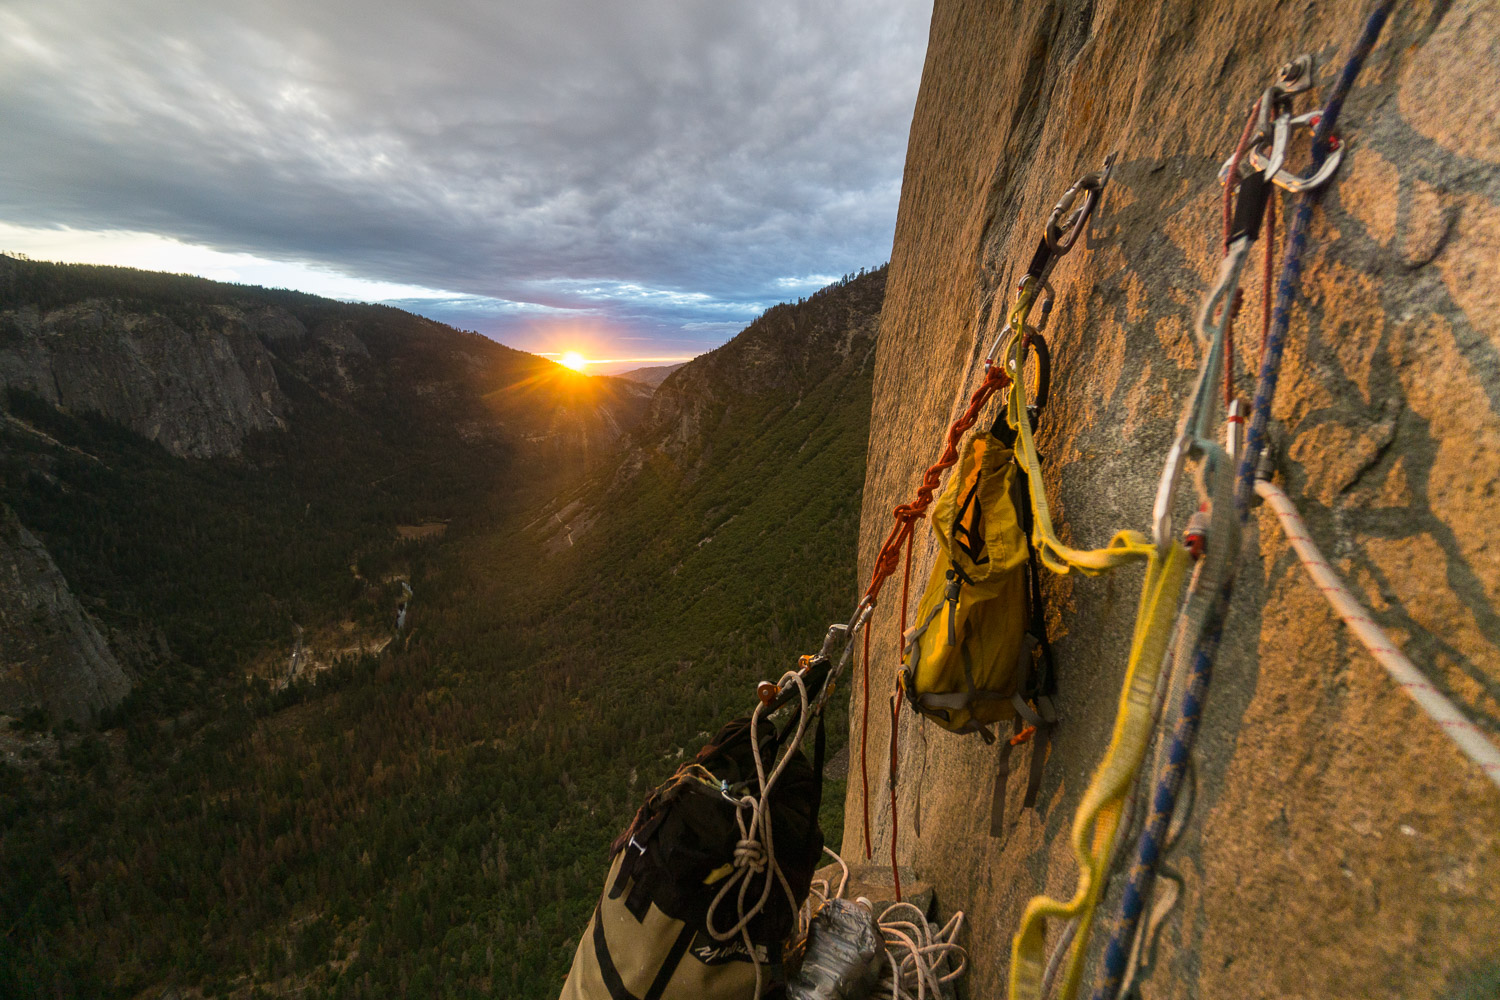 photos of rock climbing yosemite national park california